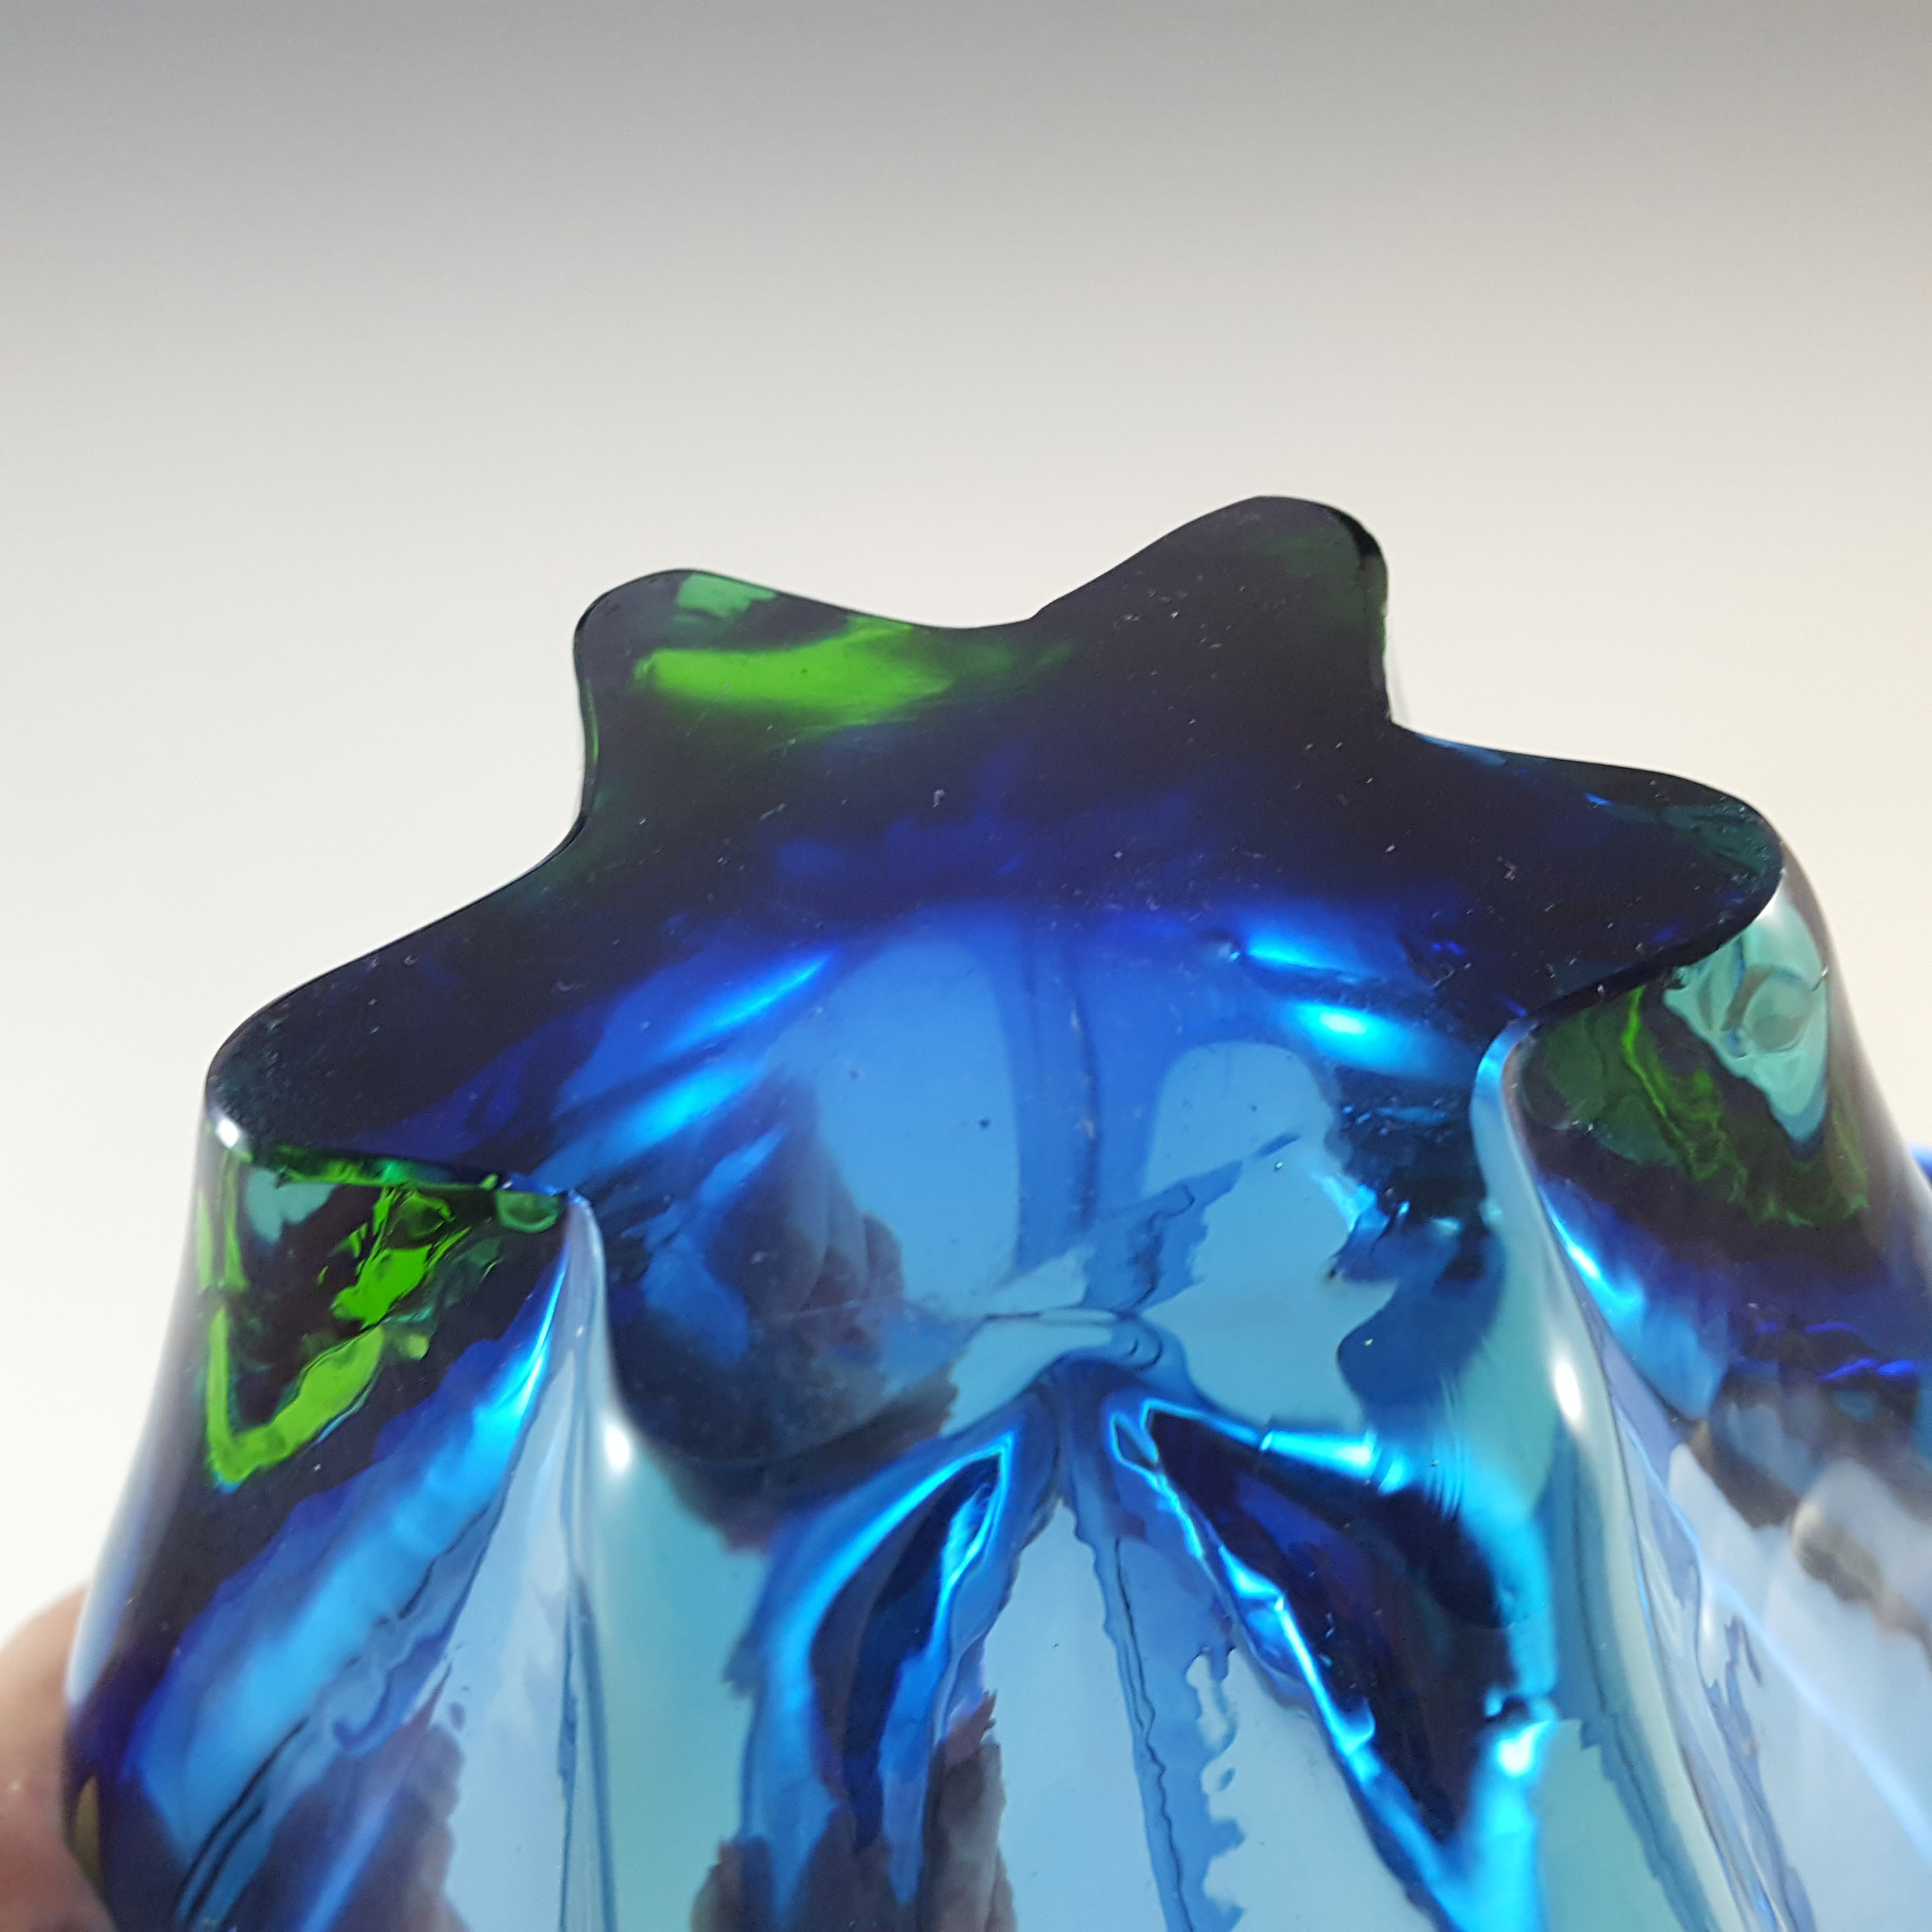 Cristallo Venezia CCC Murano Blue & Green Sommerso Glass Bowl - Click Image to Close